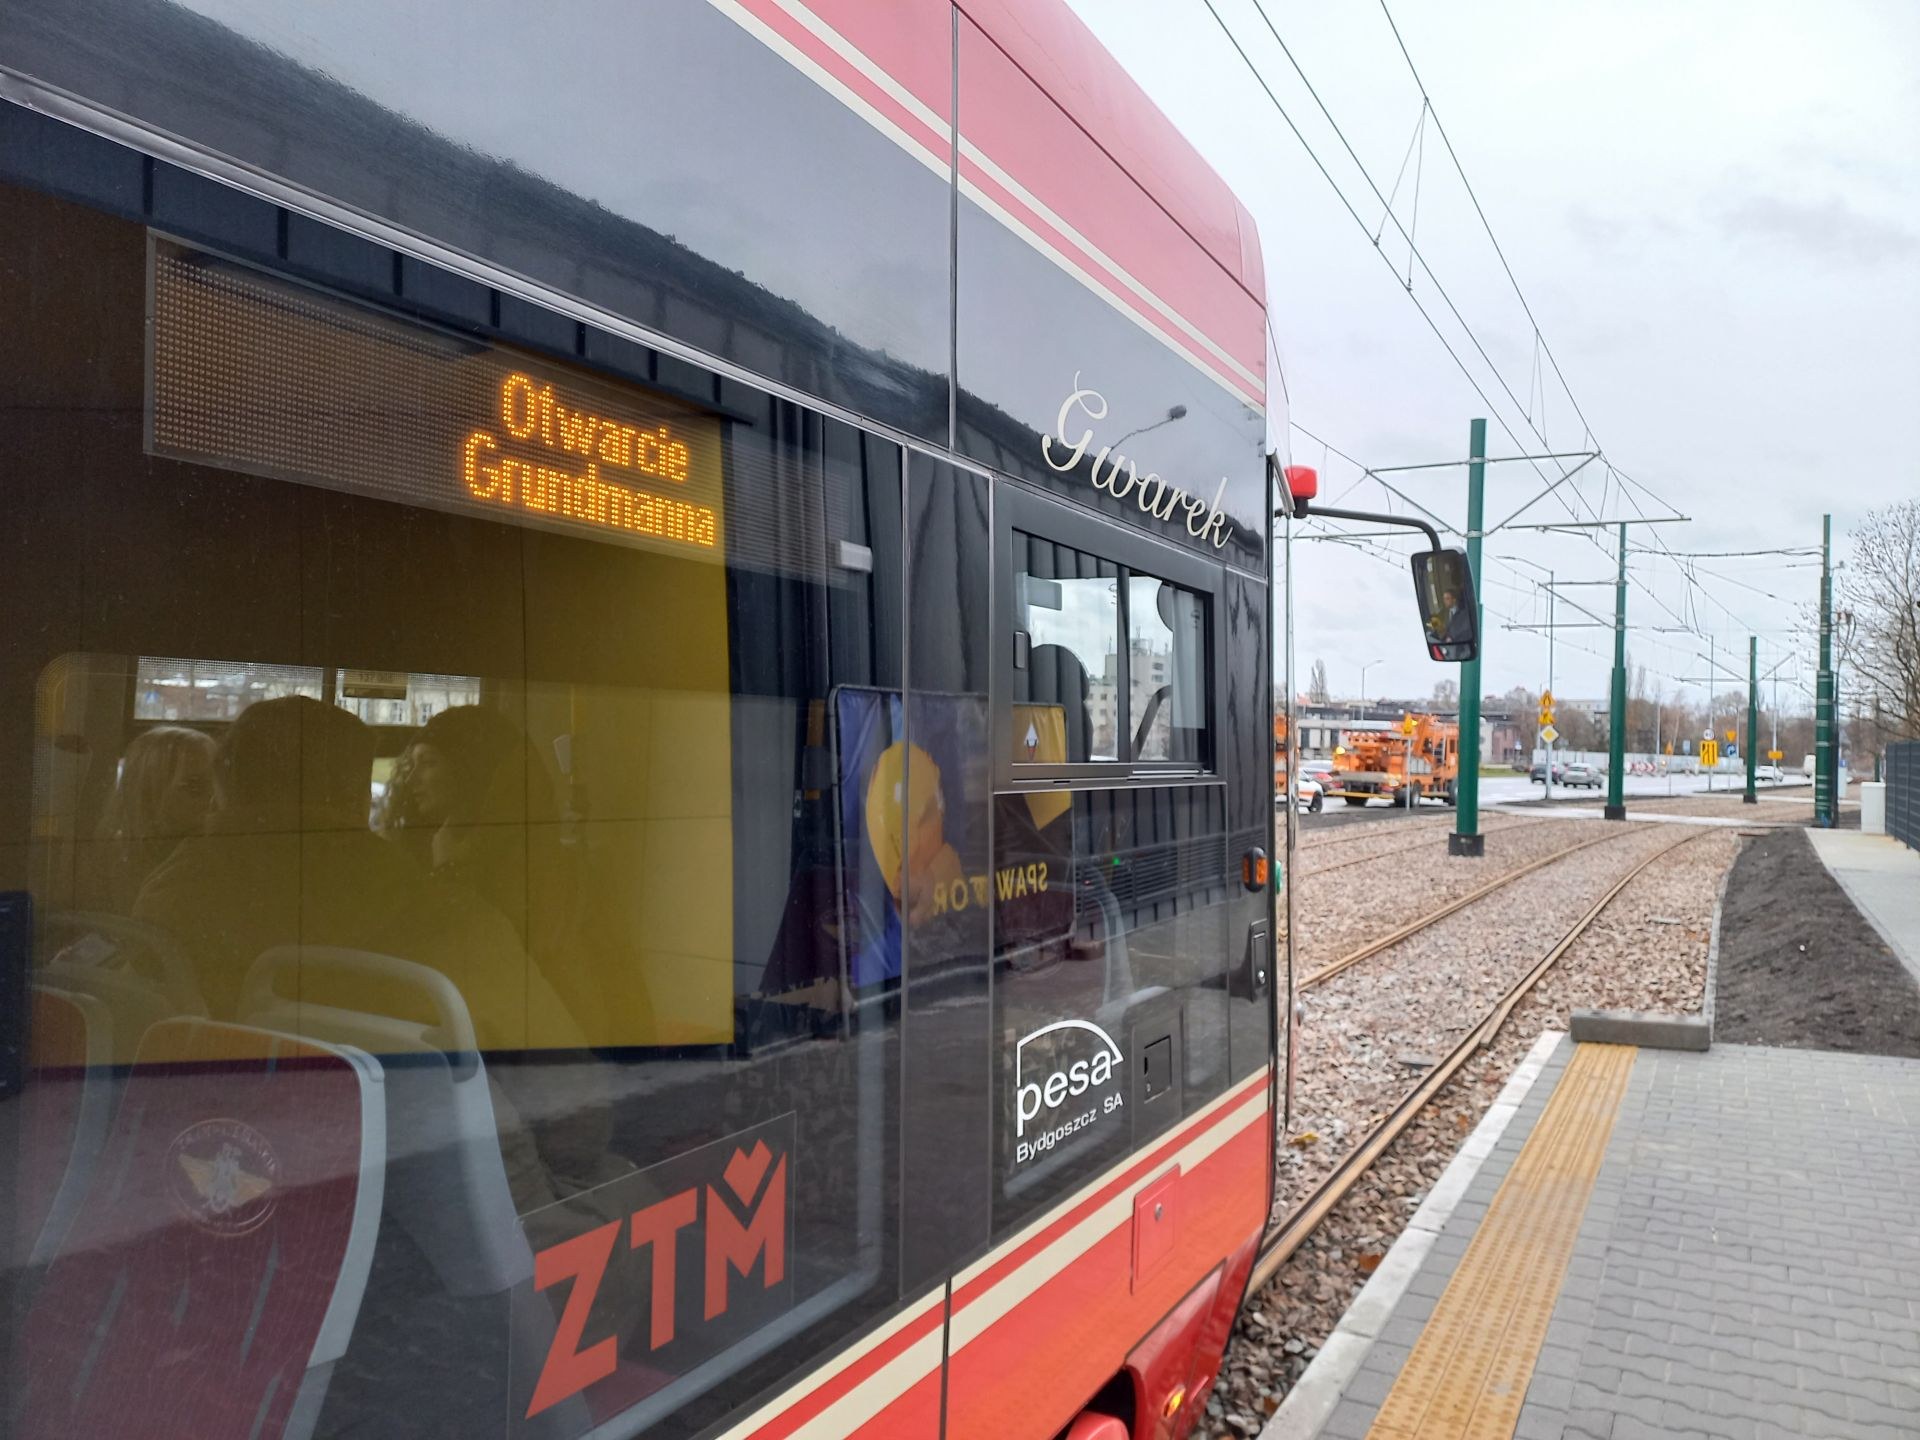 Nowa linia tramwajowa Katowice Grundmana MIW 12